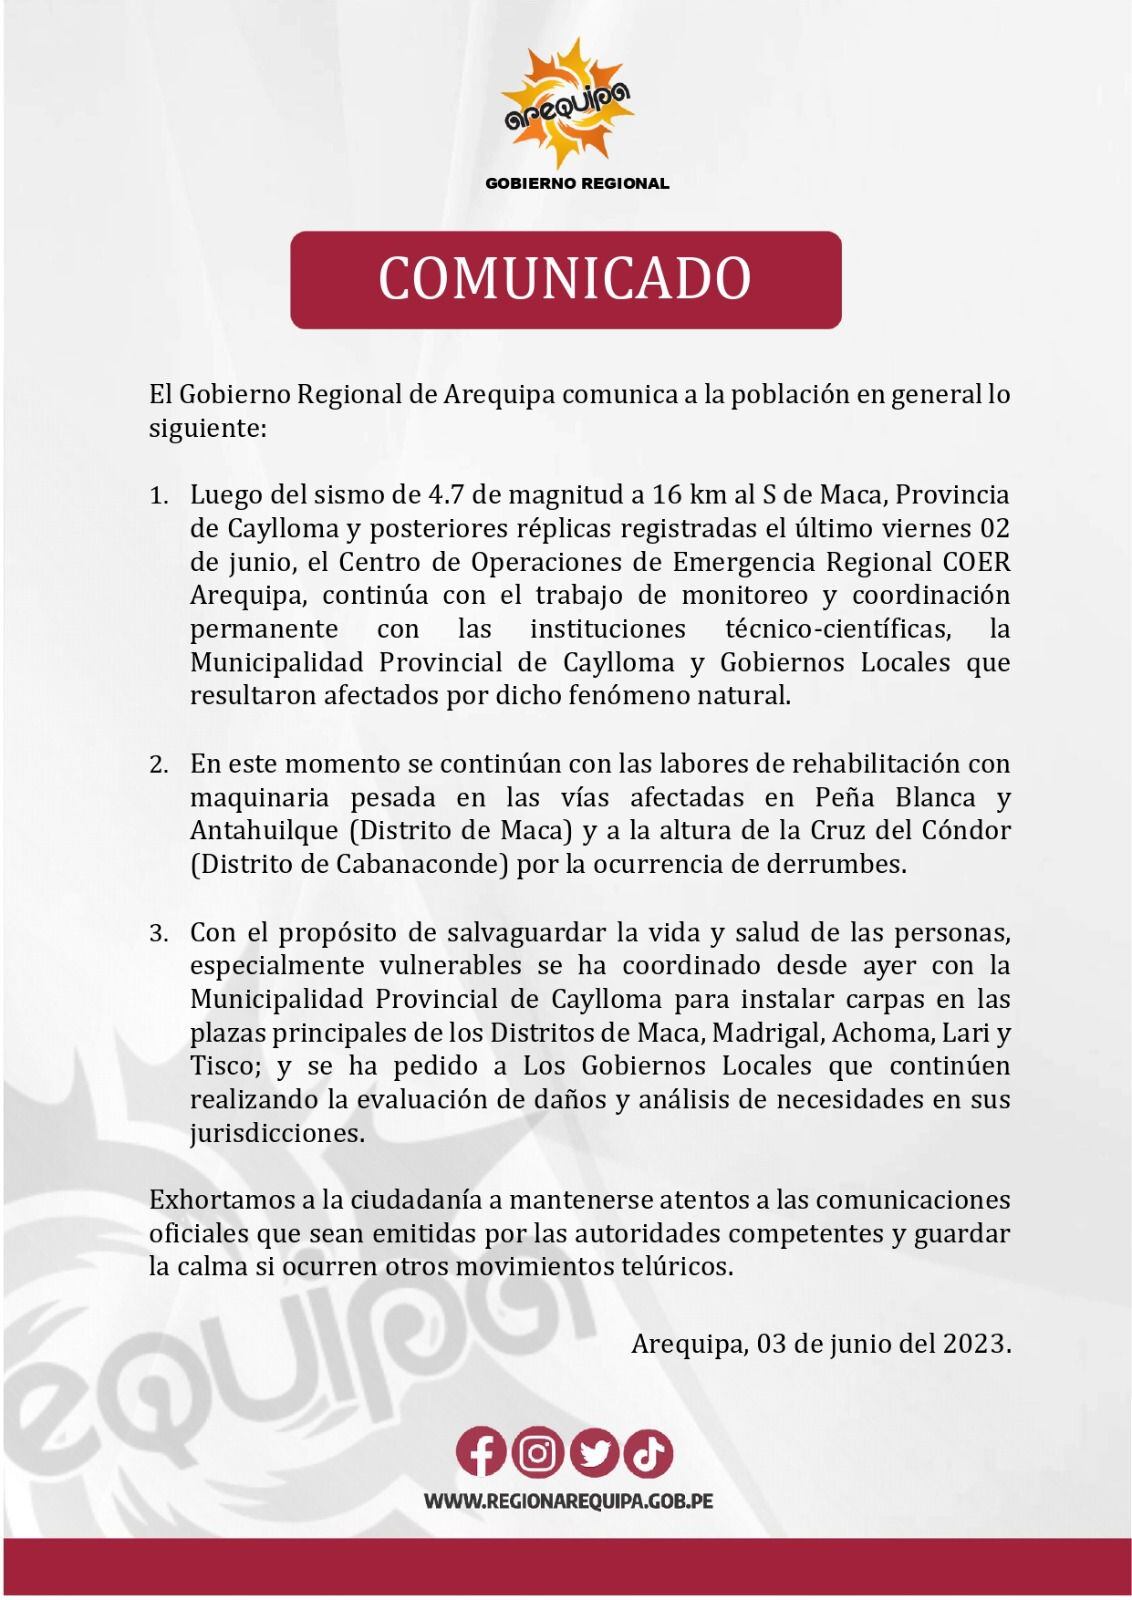 Comunicado del gobierno regional de Arequipa.